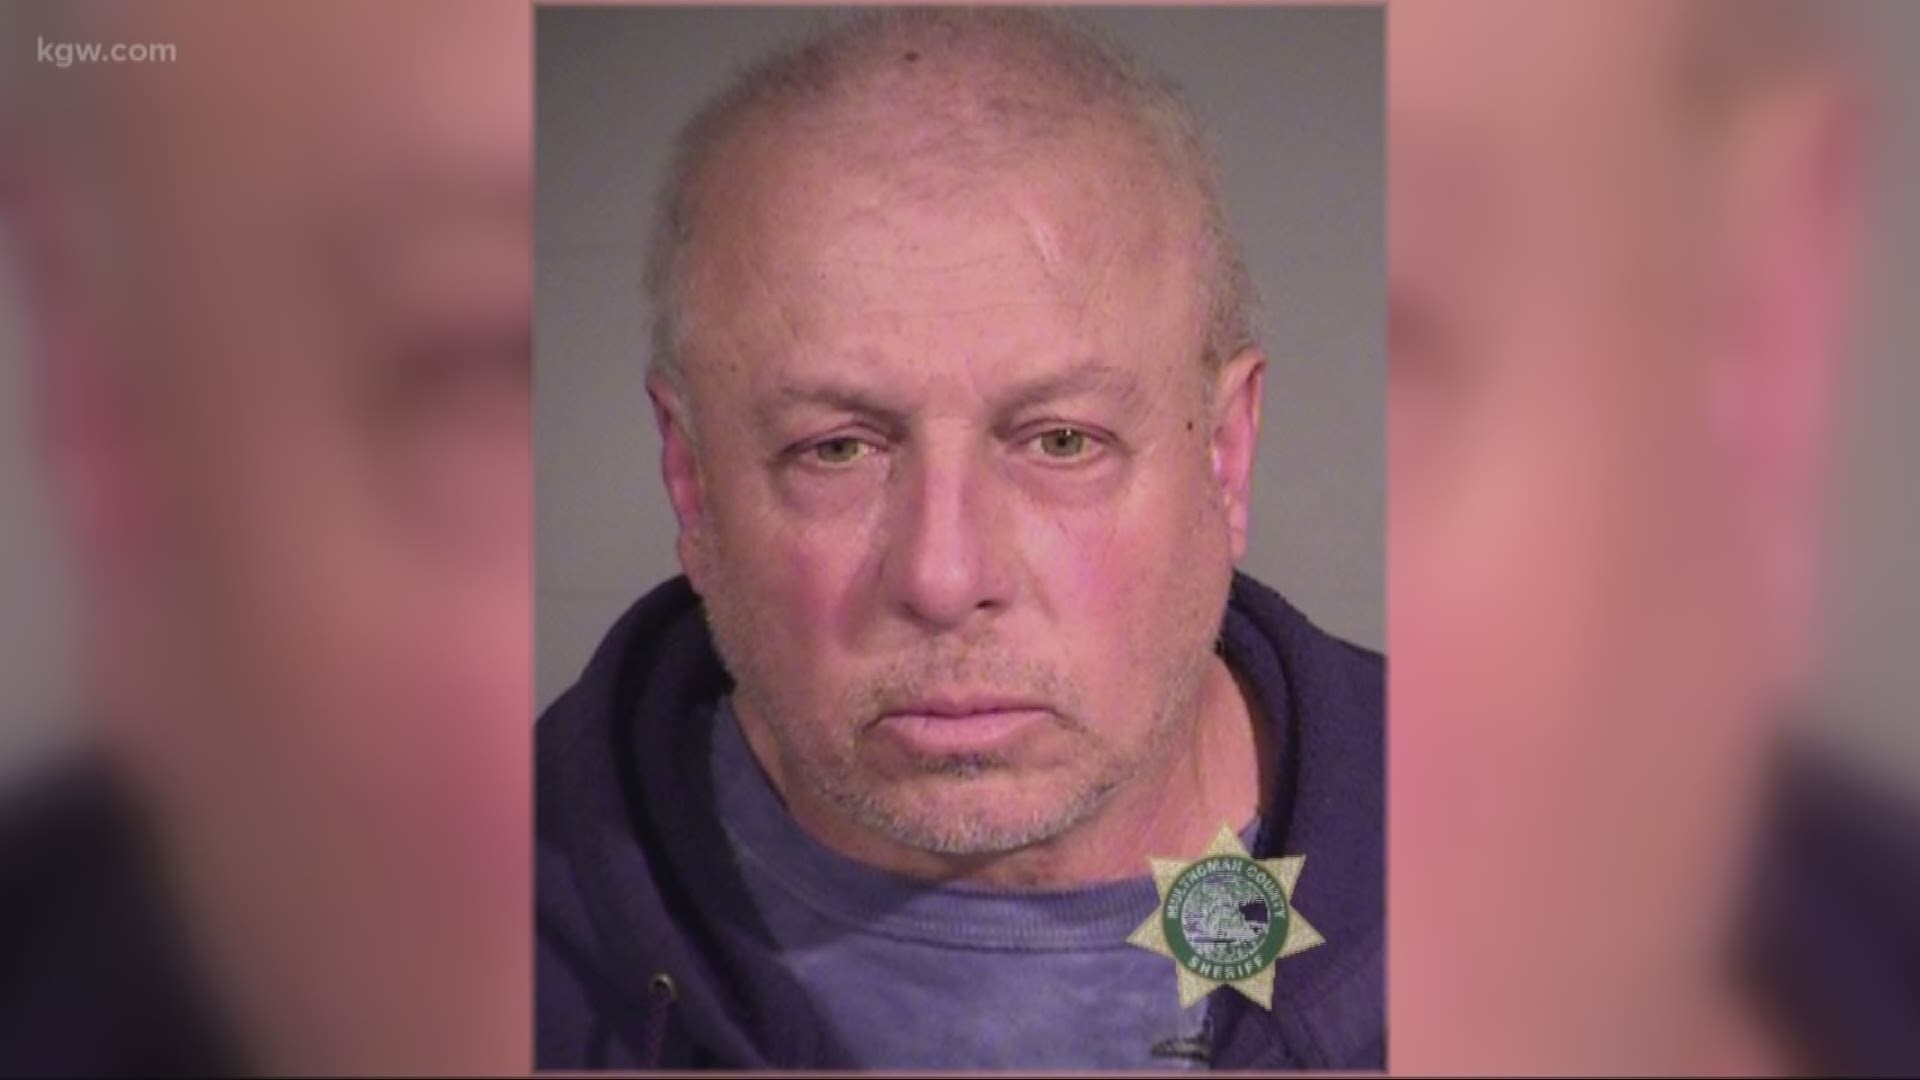 Man arrested for pulling knife on kids